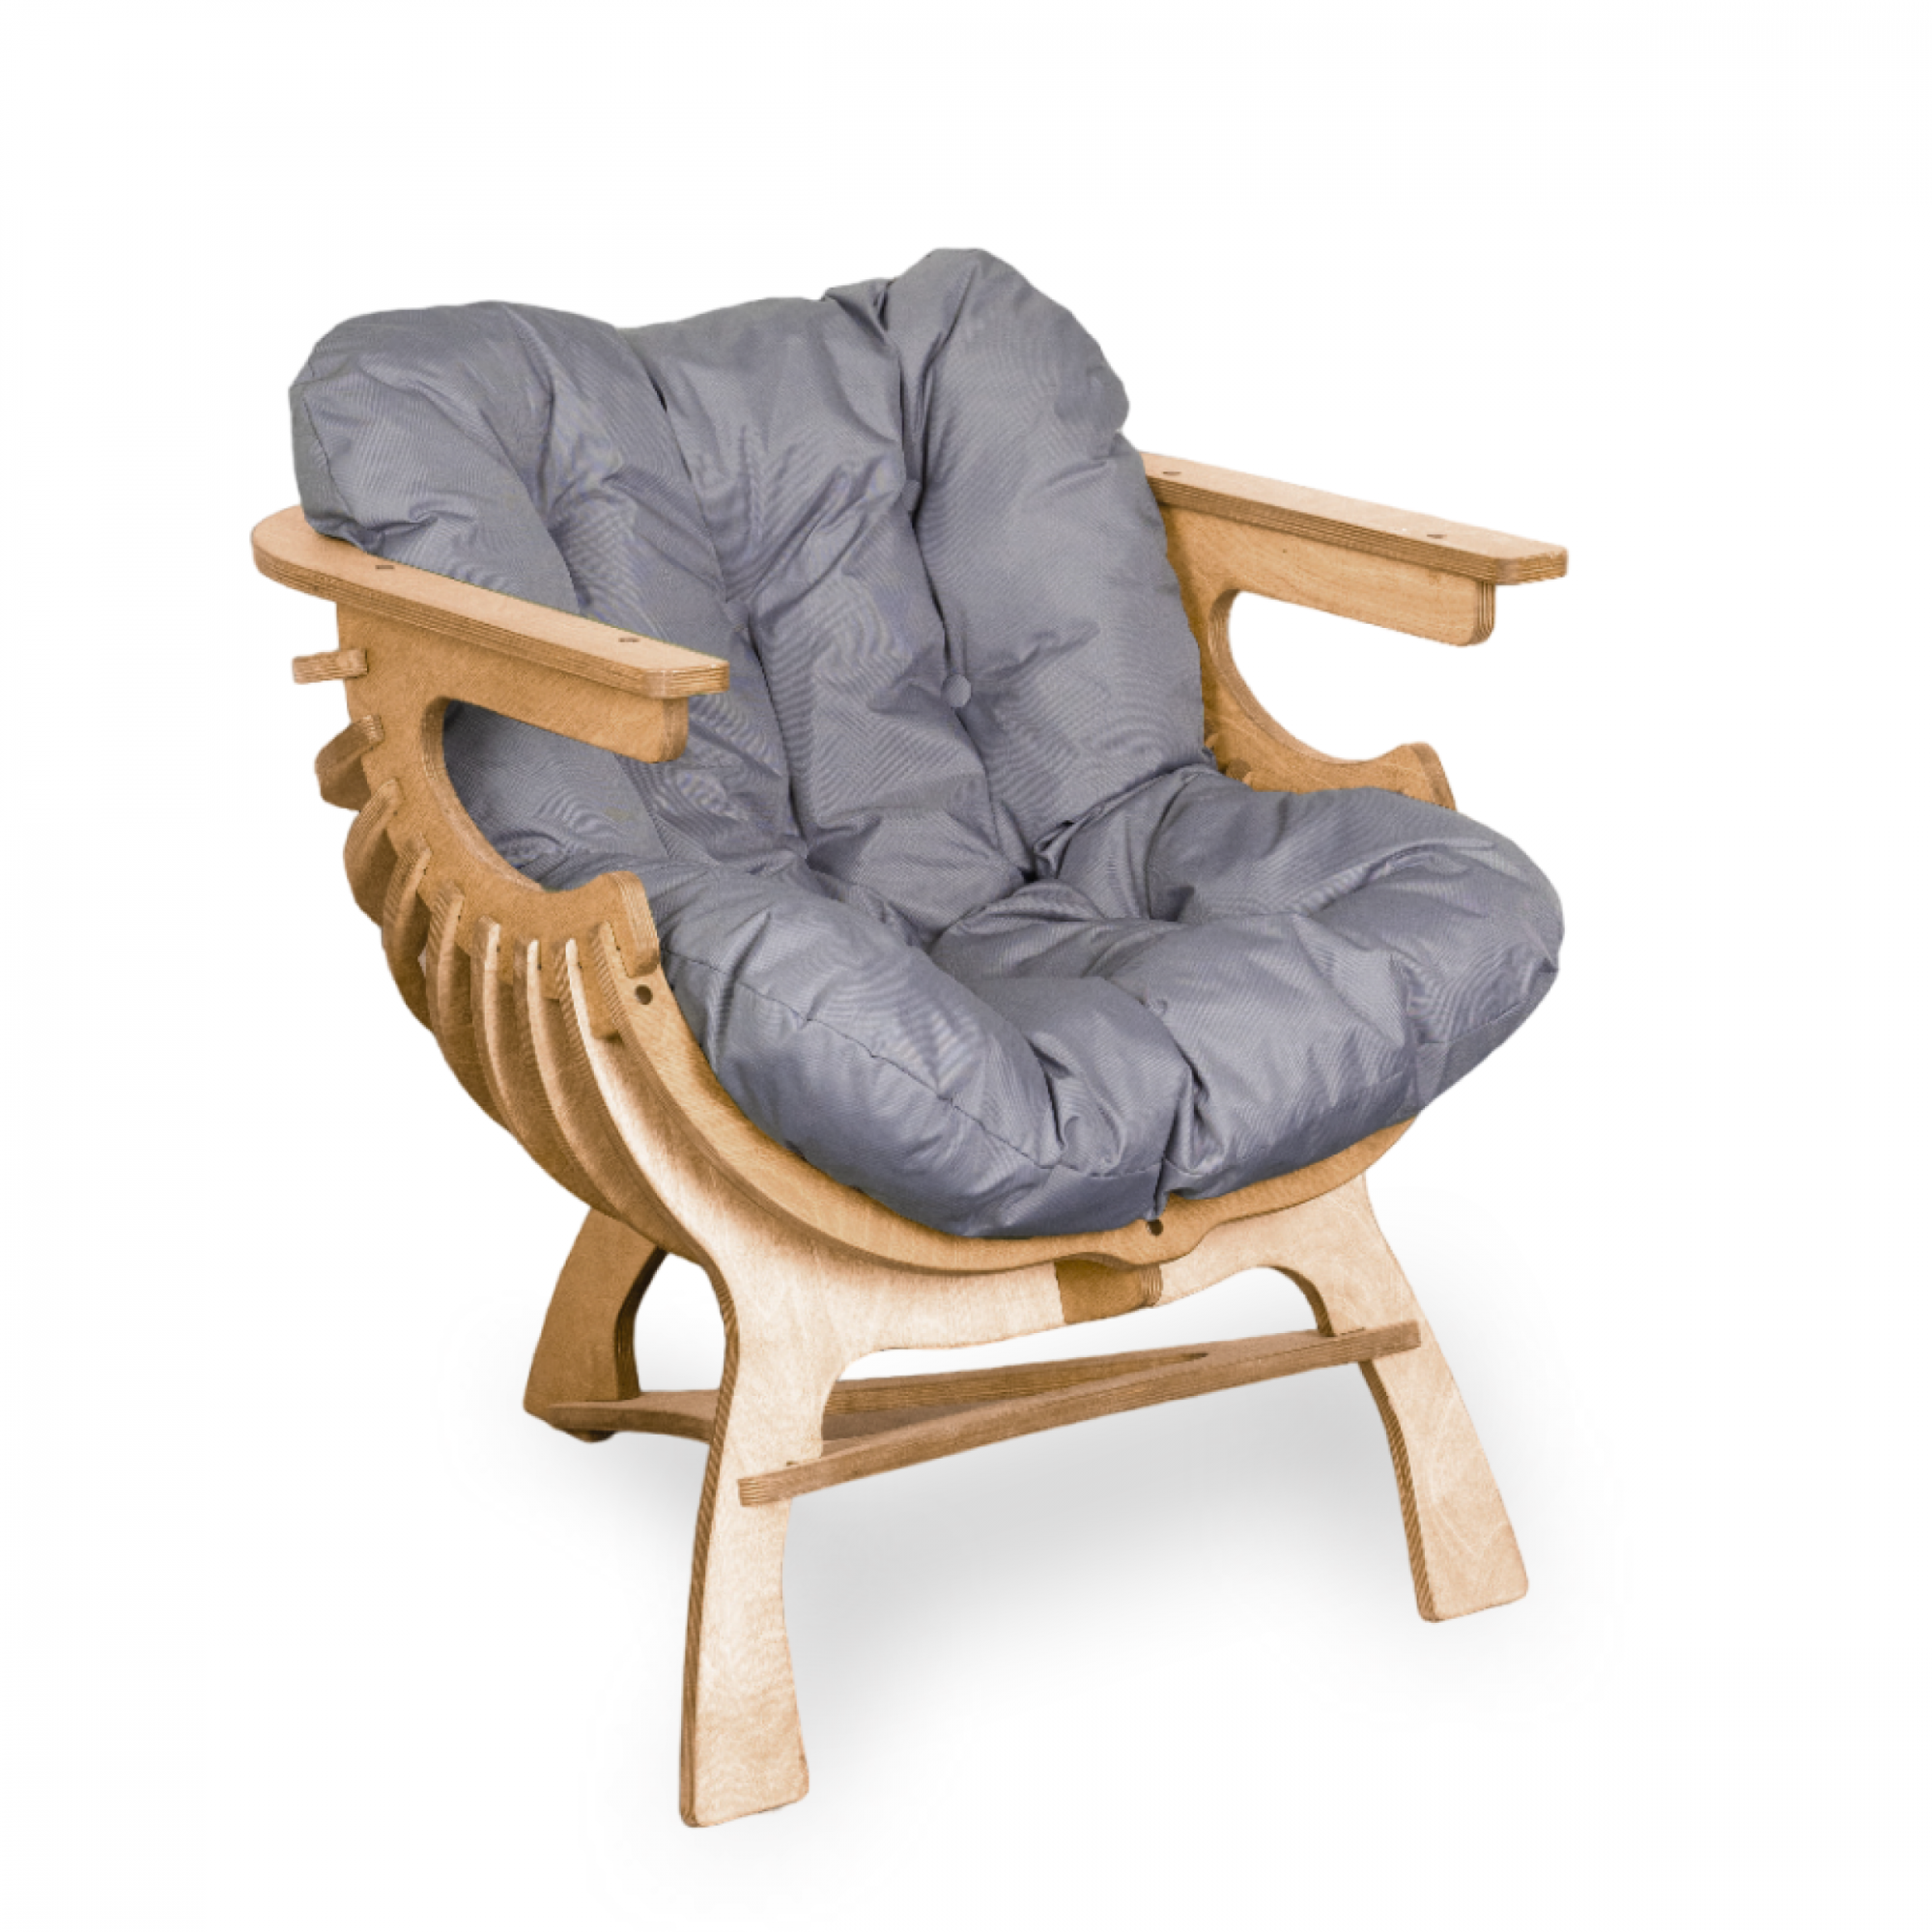 Кресло для отдыха "Ракушка" Axioma.woodshop - купить в Москве, цены на Мегамаркет | 600012356844